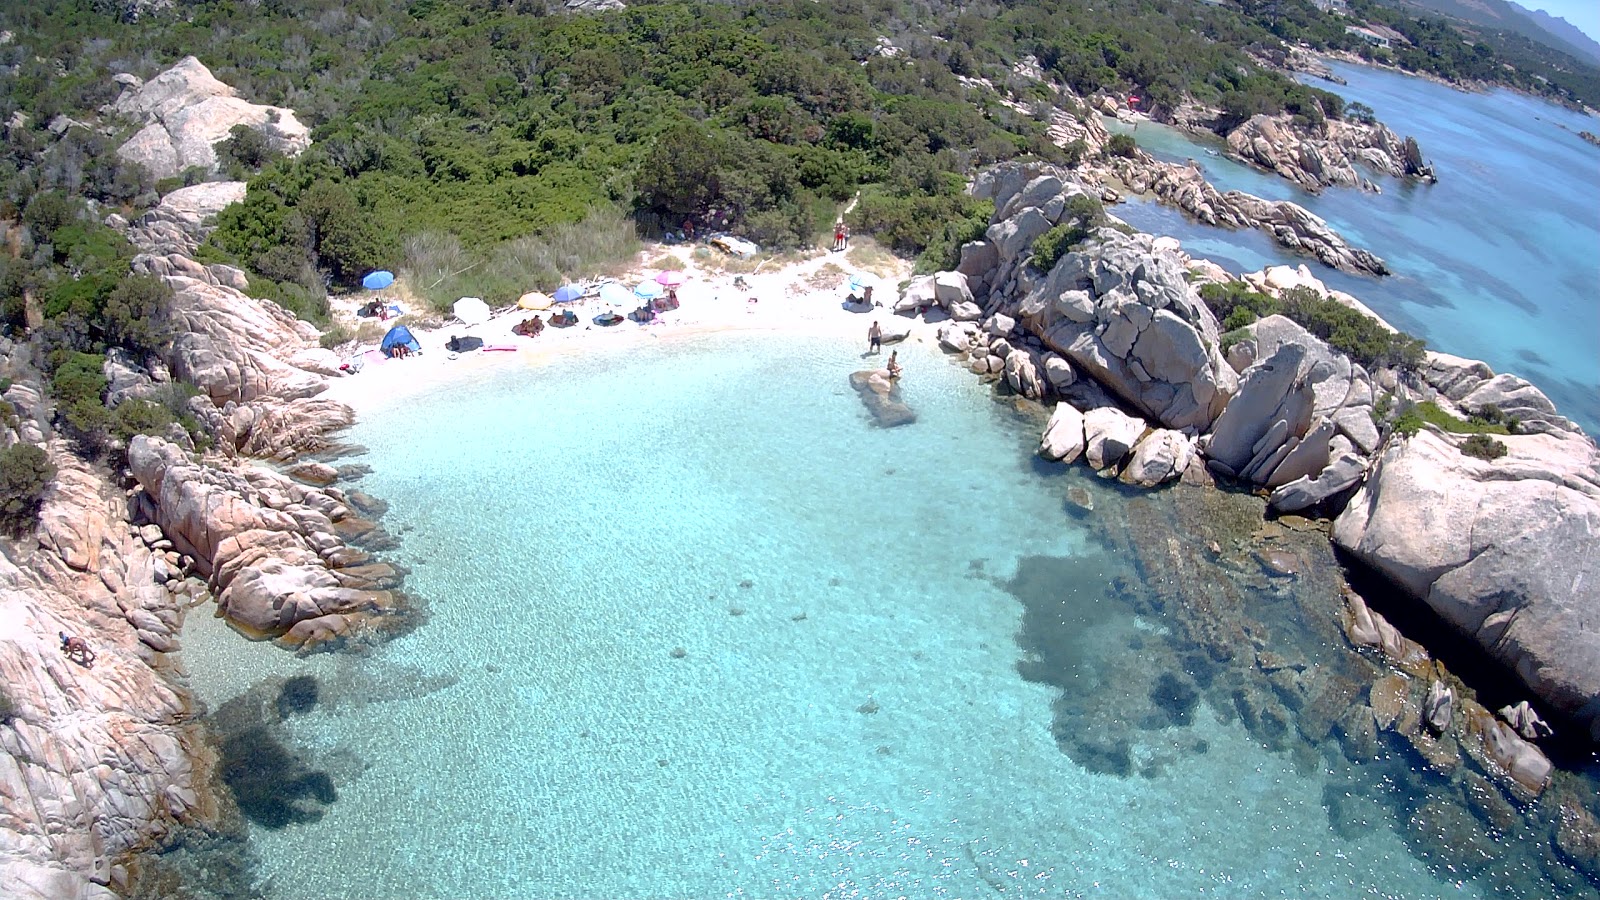 Photo of Spiaggia Delle Vacche located in natural area